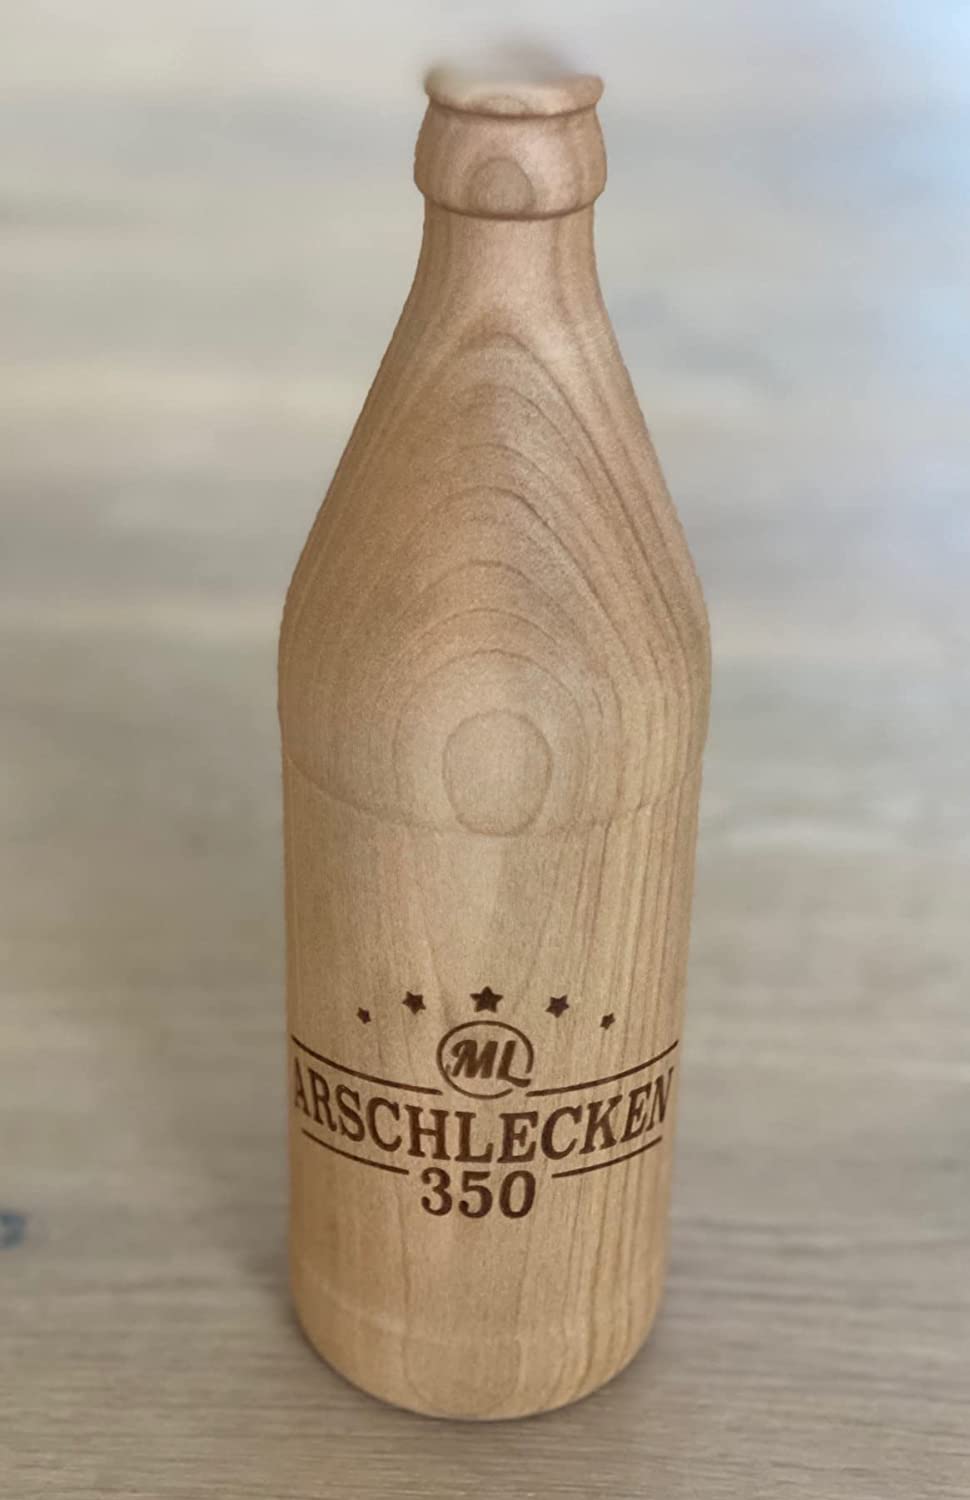 Arschlecken350 Flaschenöffner in Bierflaschenform "0,5l" Euroflasche